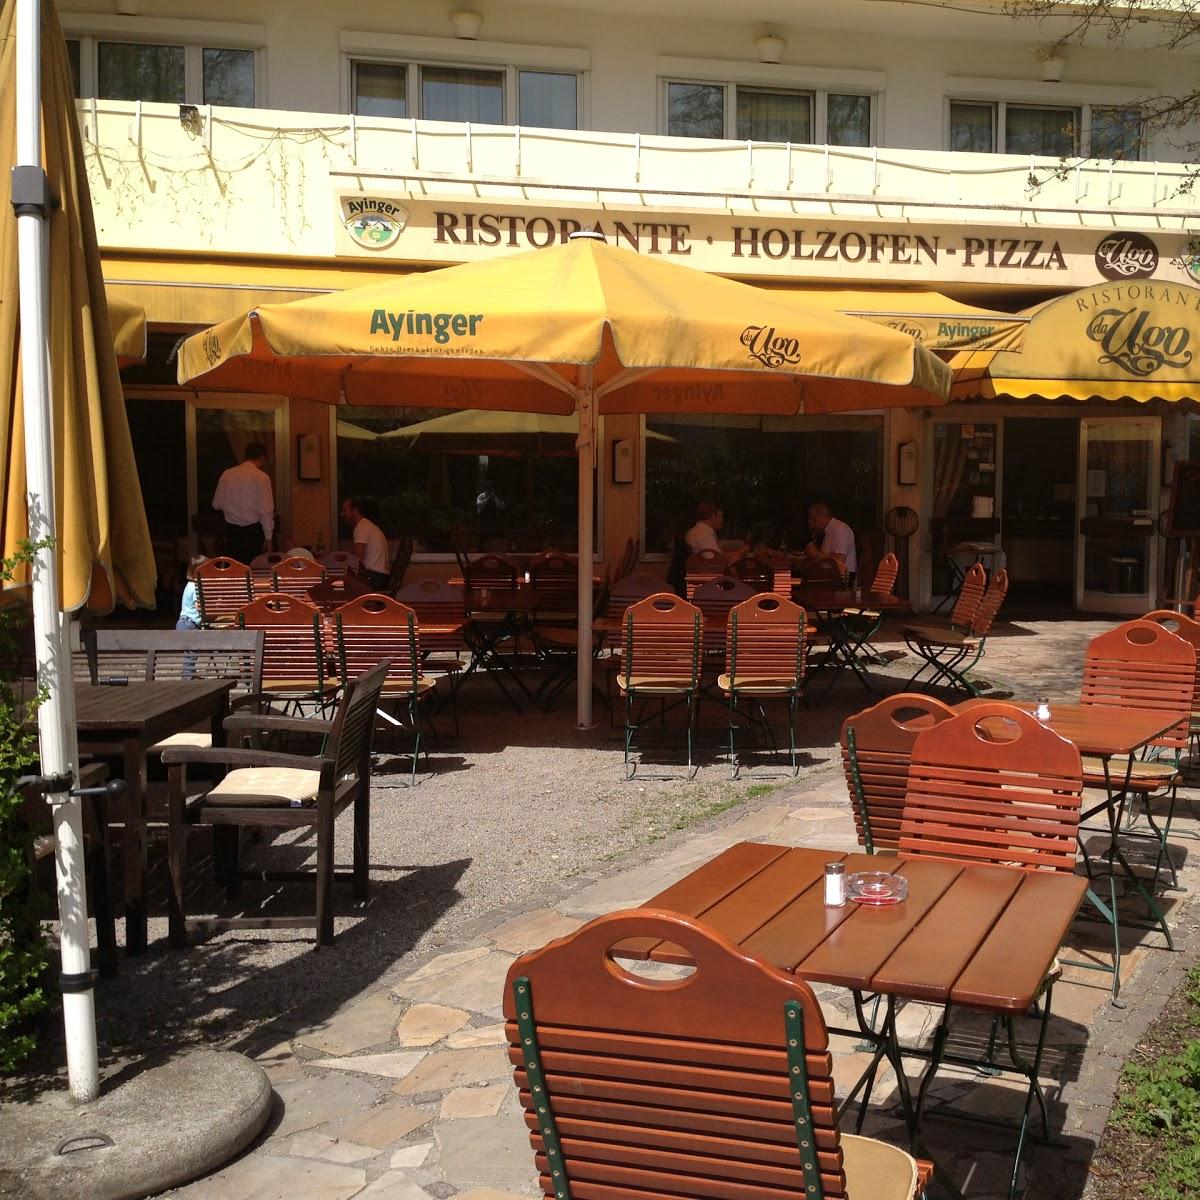 Restaurant "Ristorante da Ugo" in München